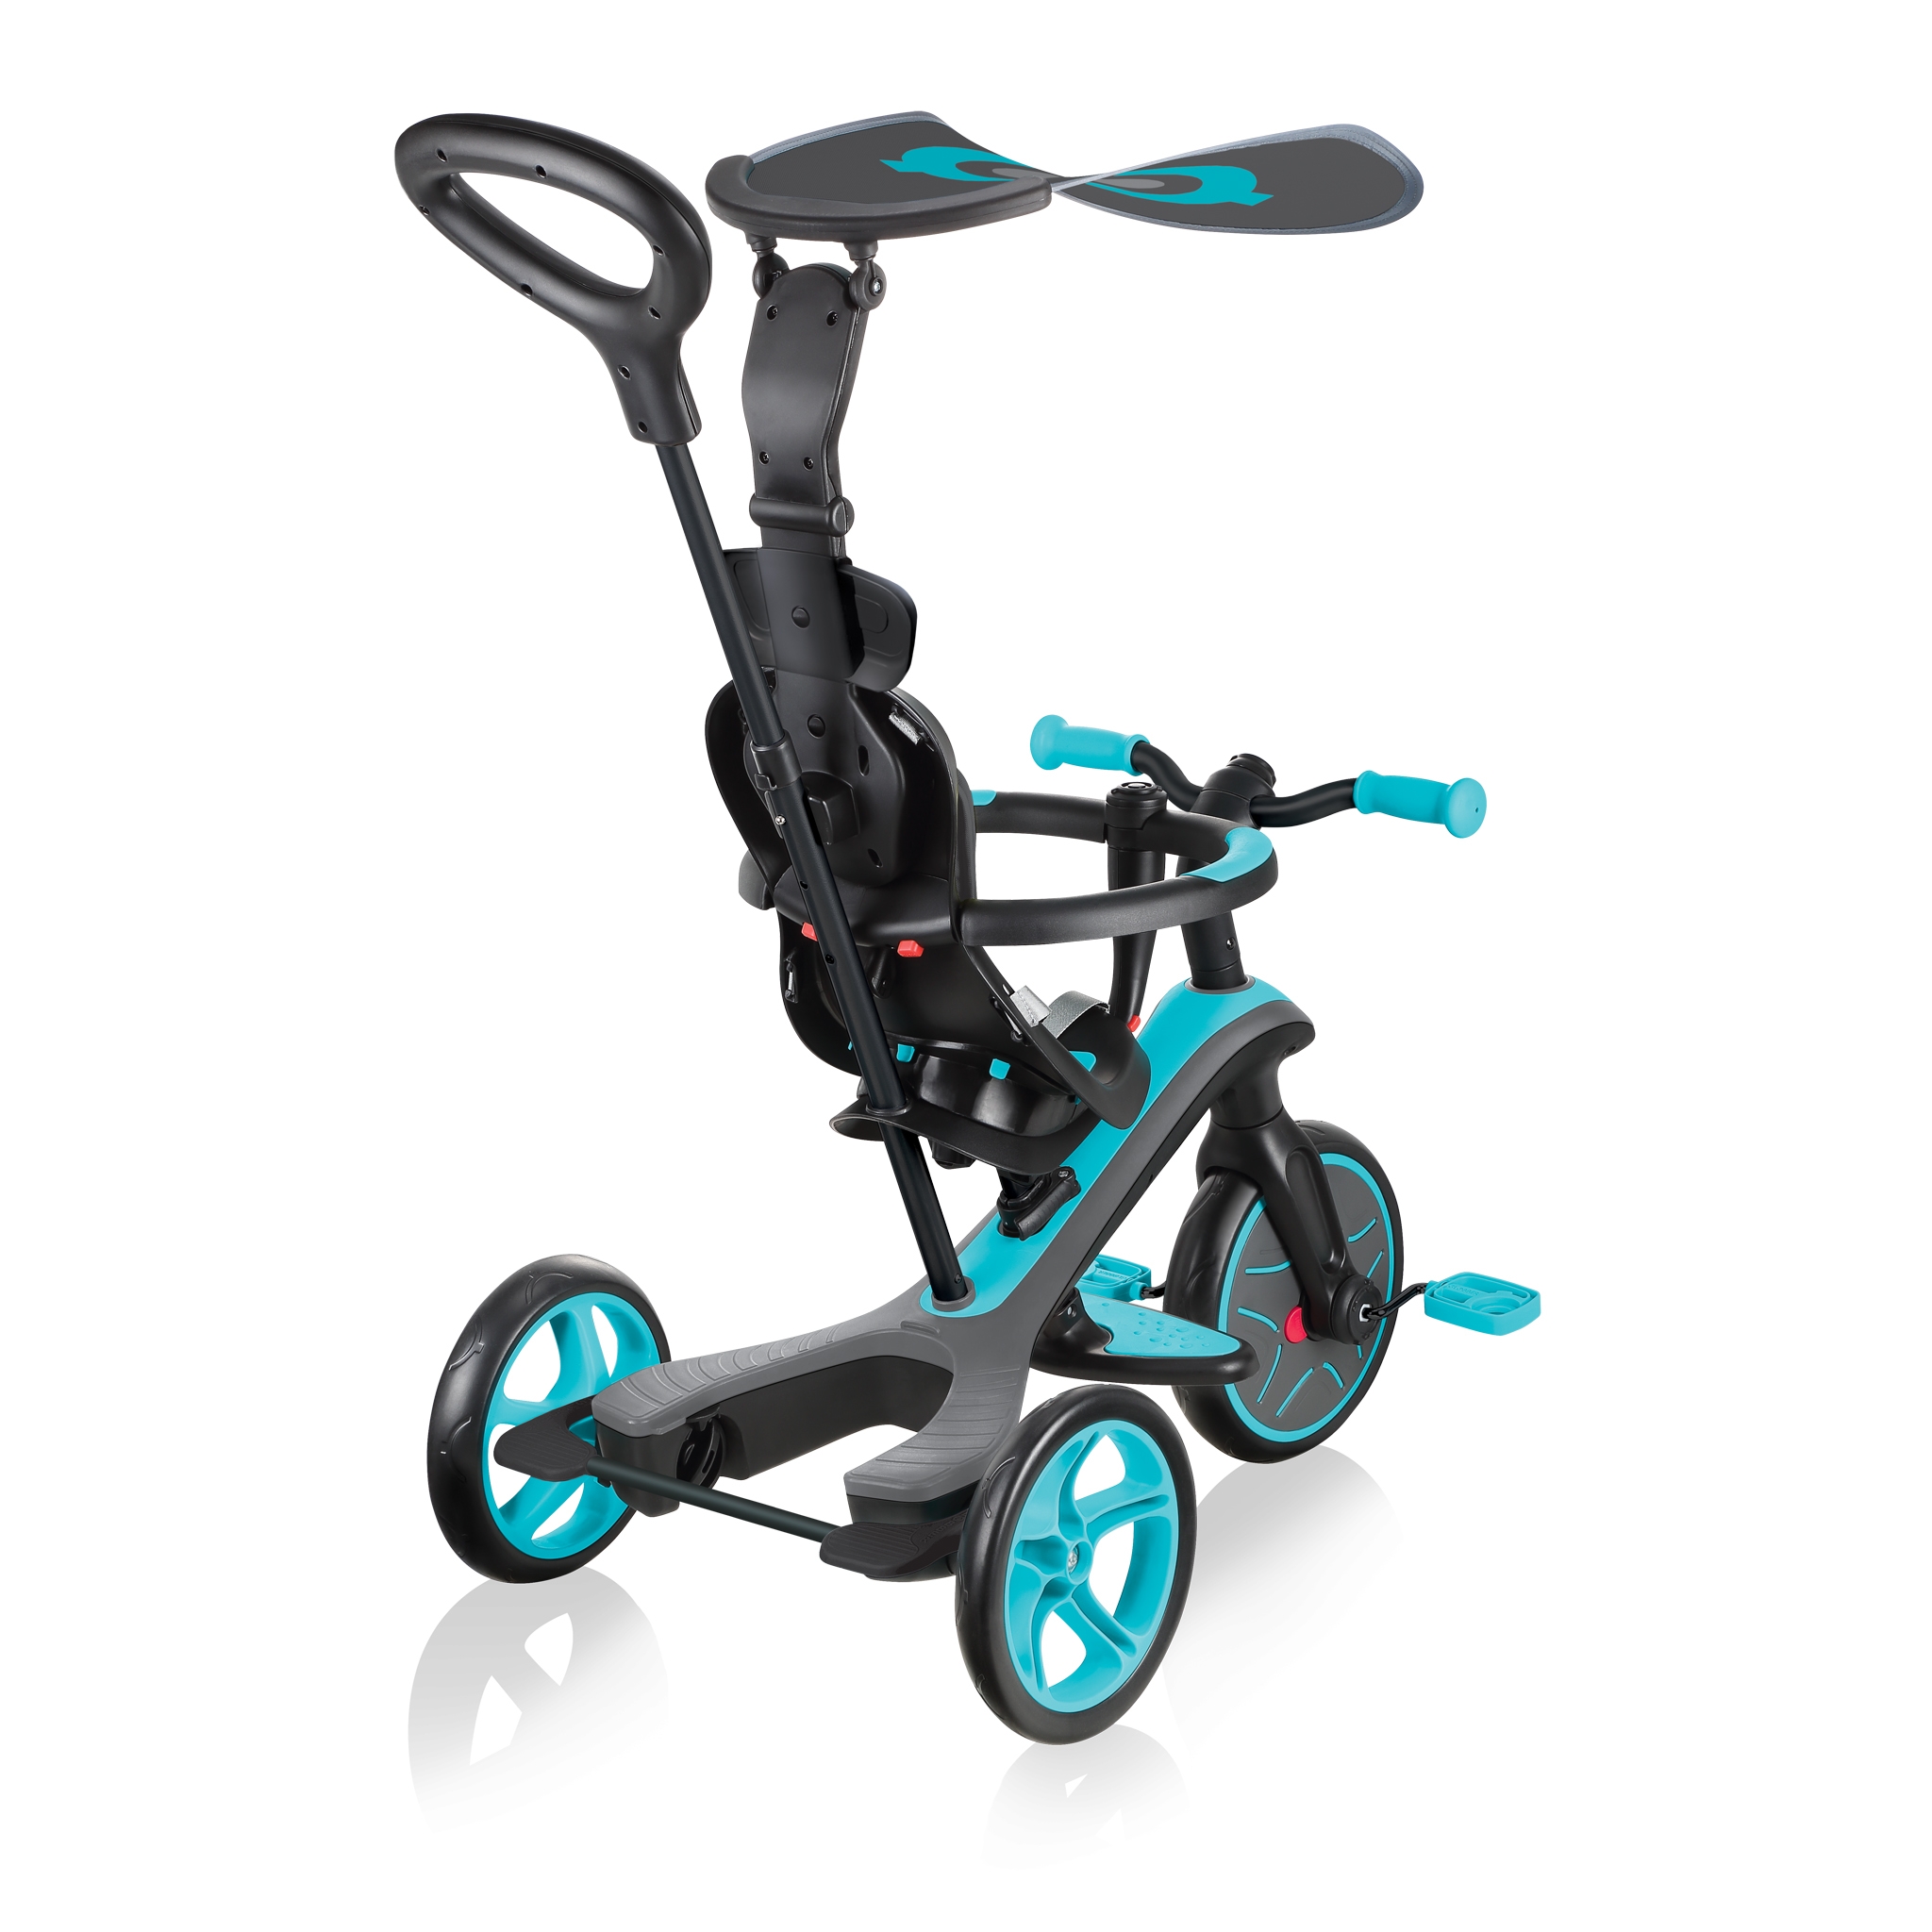 Acheter en ligne GLOBBER Tricycle Trike Explorer Foldable 4 in 1 (25 cm,  Gris, Noir) à bons prix et en toute sécurité 